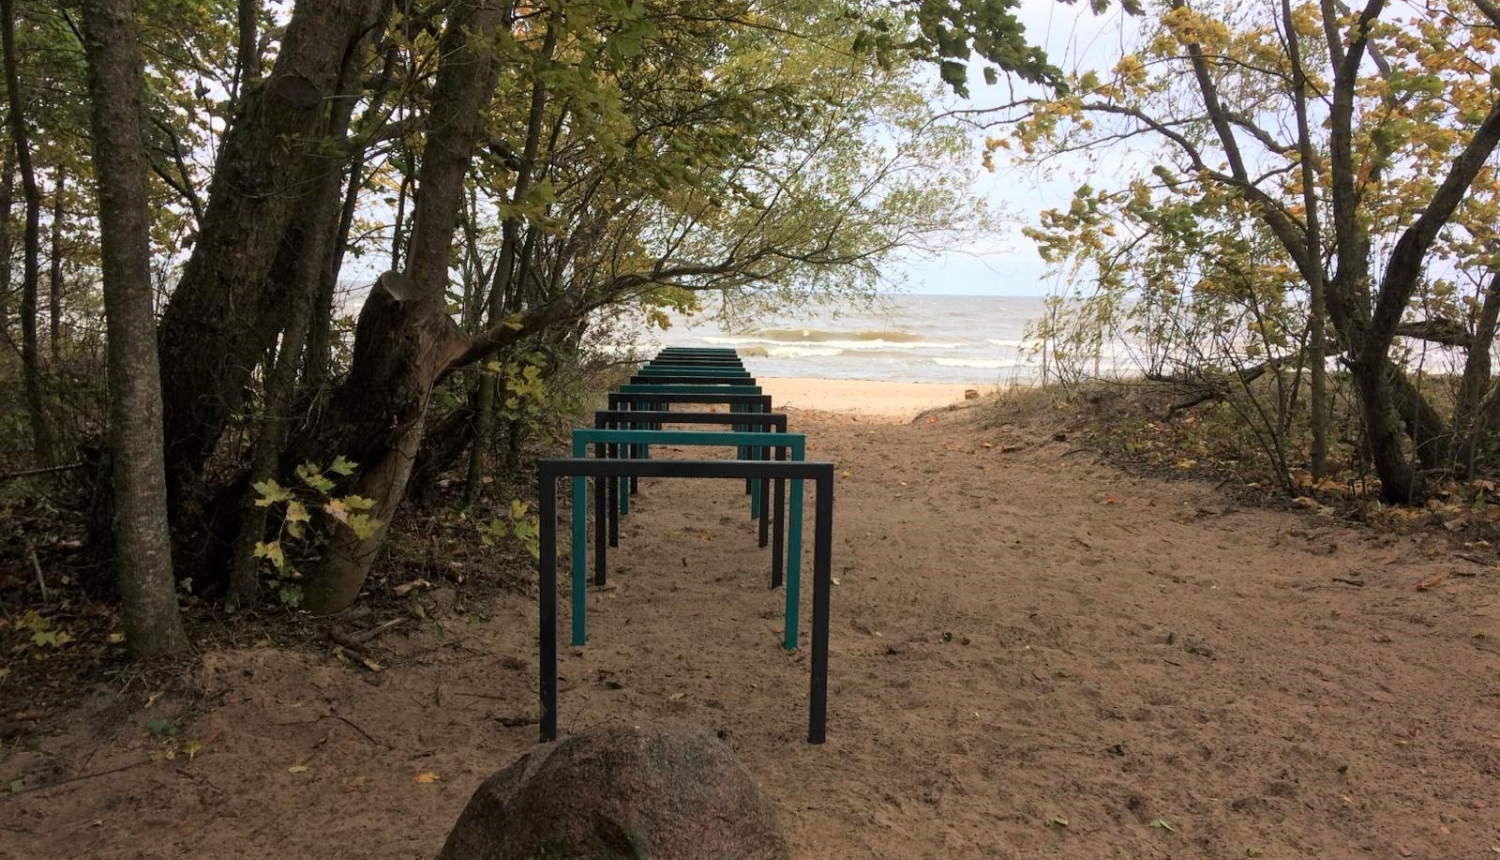 “Vārzu” publiskās pludmales zonā Skultes pagastā uzstādīti statīvi velosipēdu novietošanai